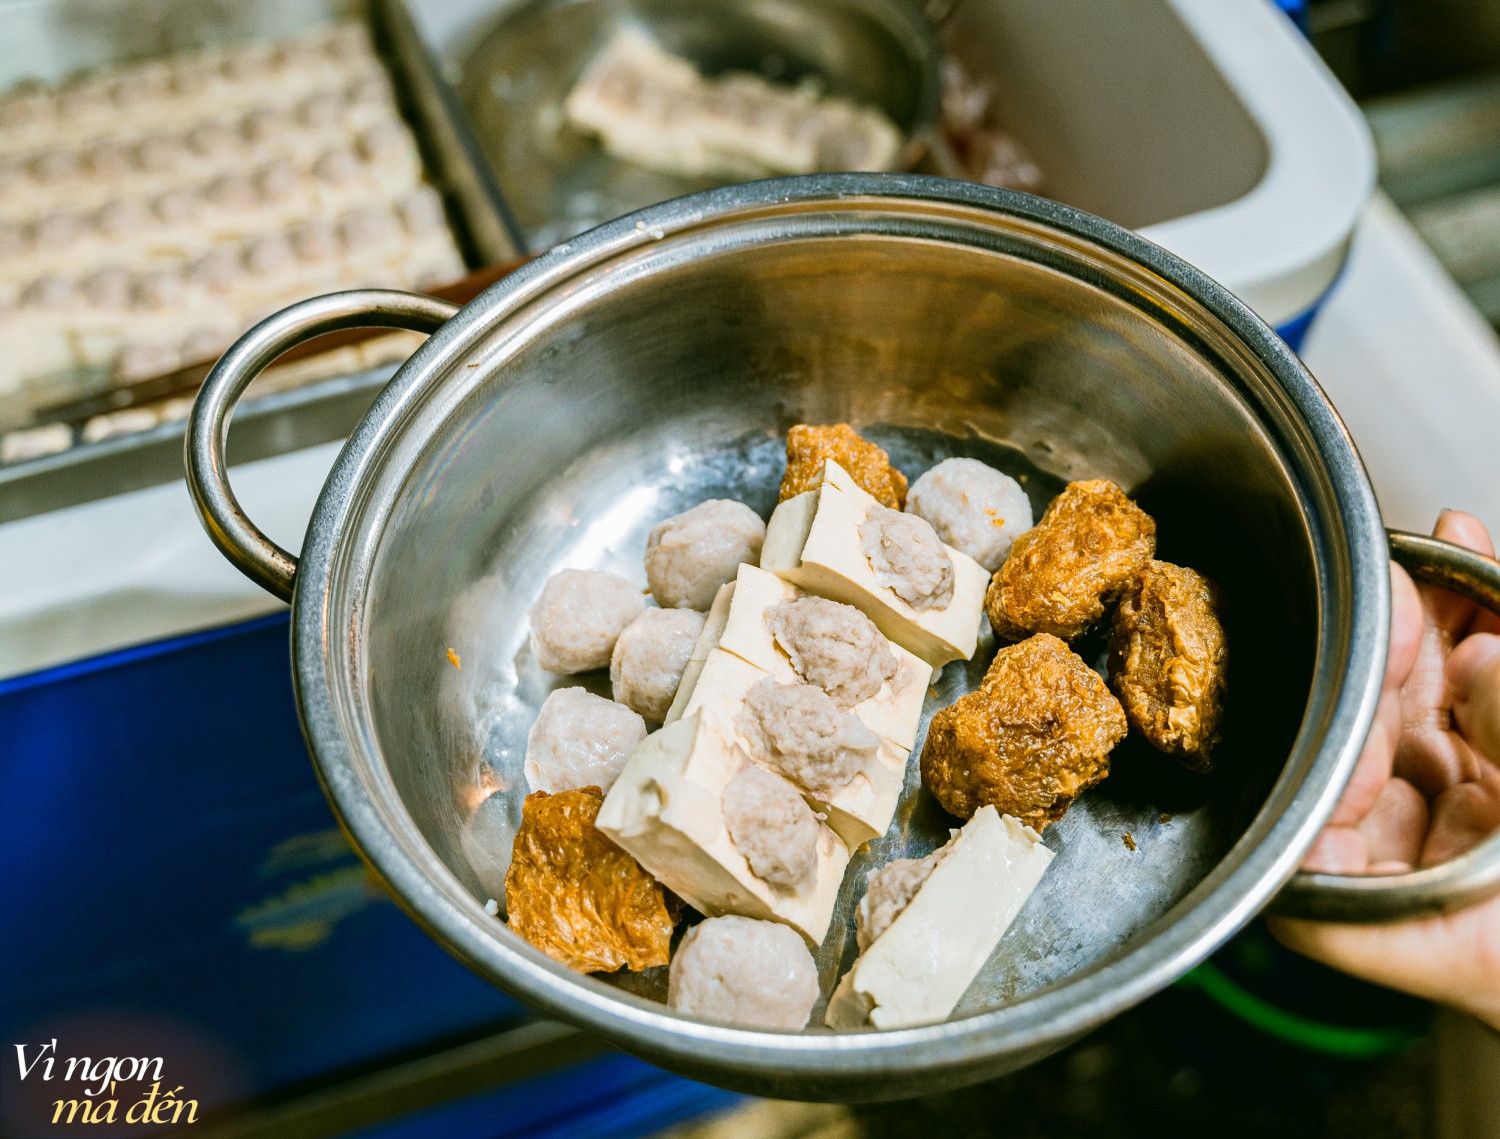 Tiệm lẩu tam tinh người Hẹ tuổi đời hơn 40 năm ở khu Chợ Lớn: Quán vỉa hè giá cao, đồ ăn đơn giản nhưng khách vẫn nườm nượp đến- Ảnh 2.